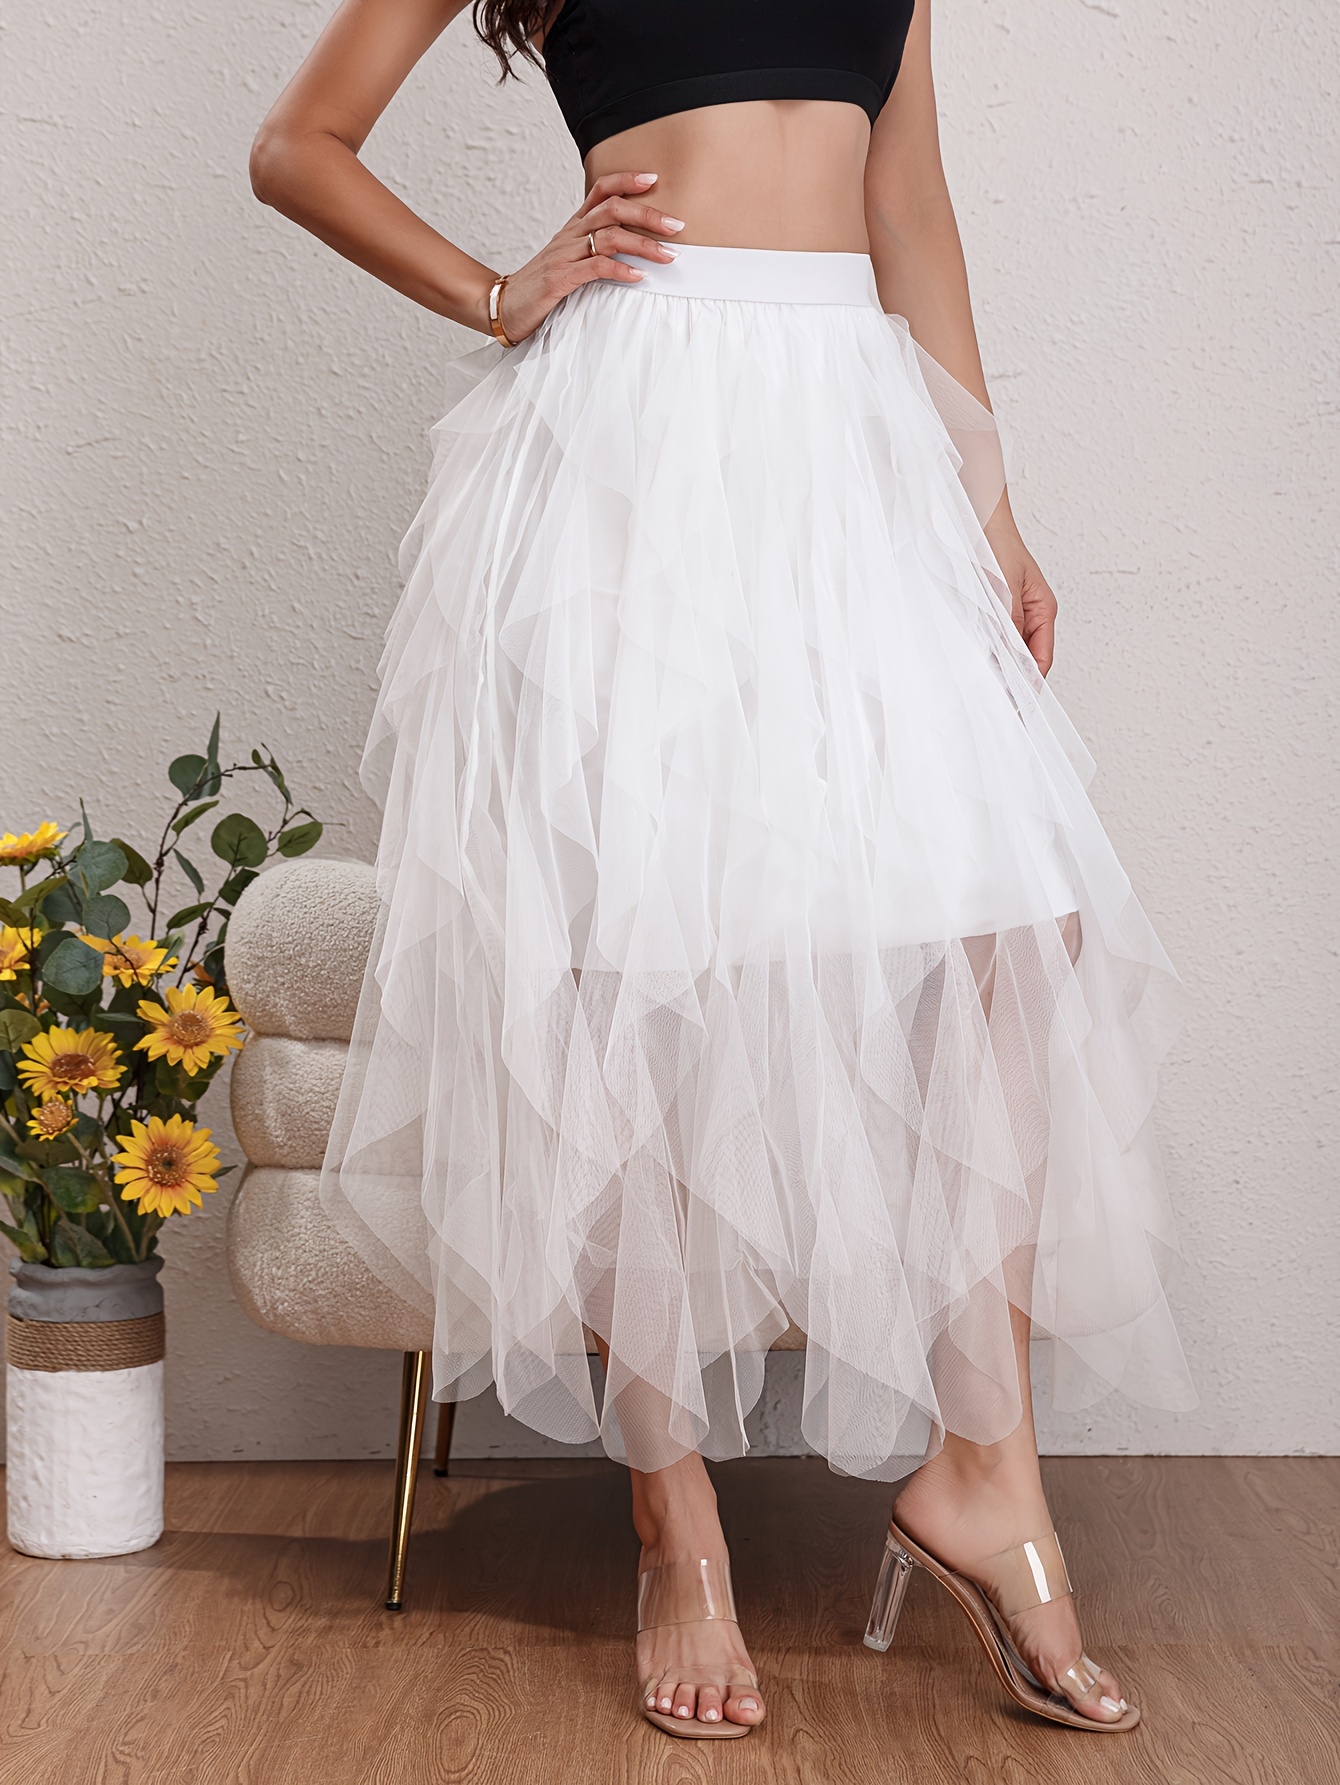 Solid Layered Mesh Skirt, Versatile Skirt For Spring & Fall, Women's  Clothing